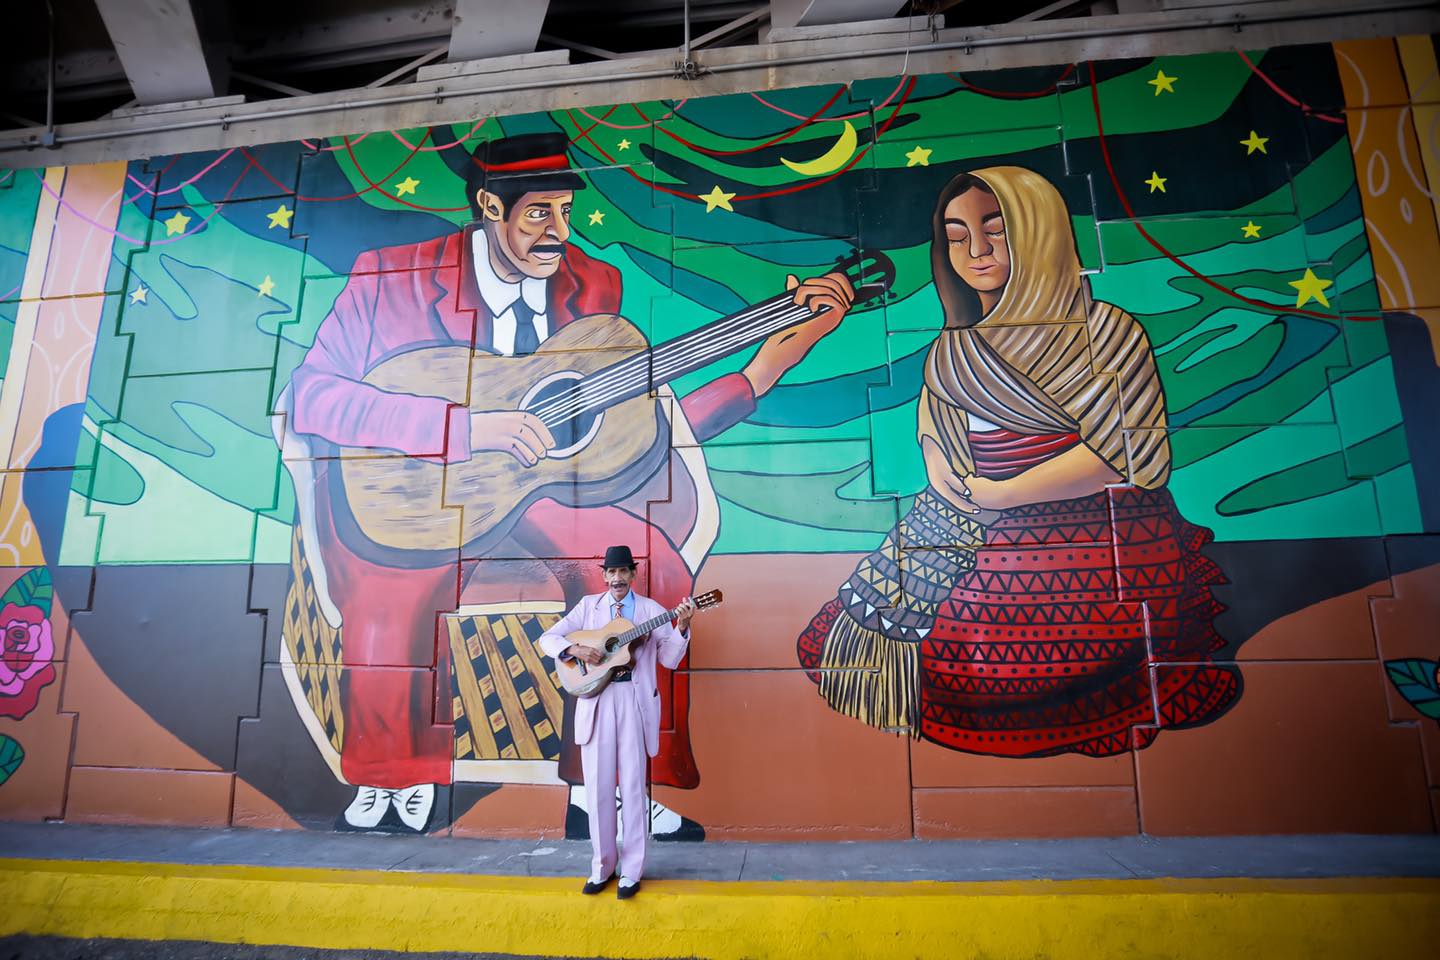 El Caballero en mural en Ocotlán